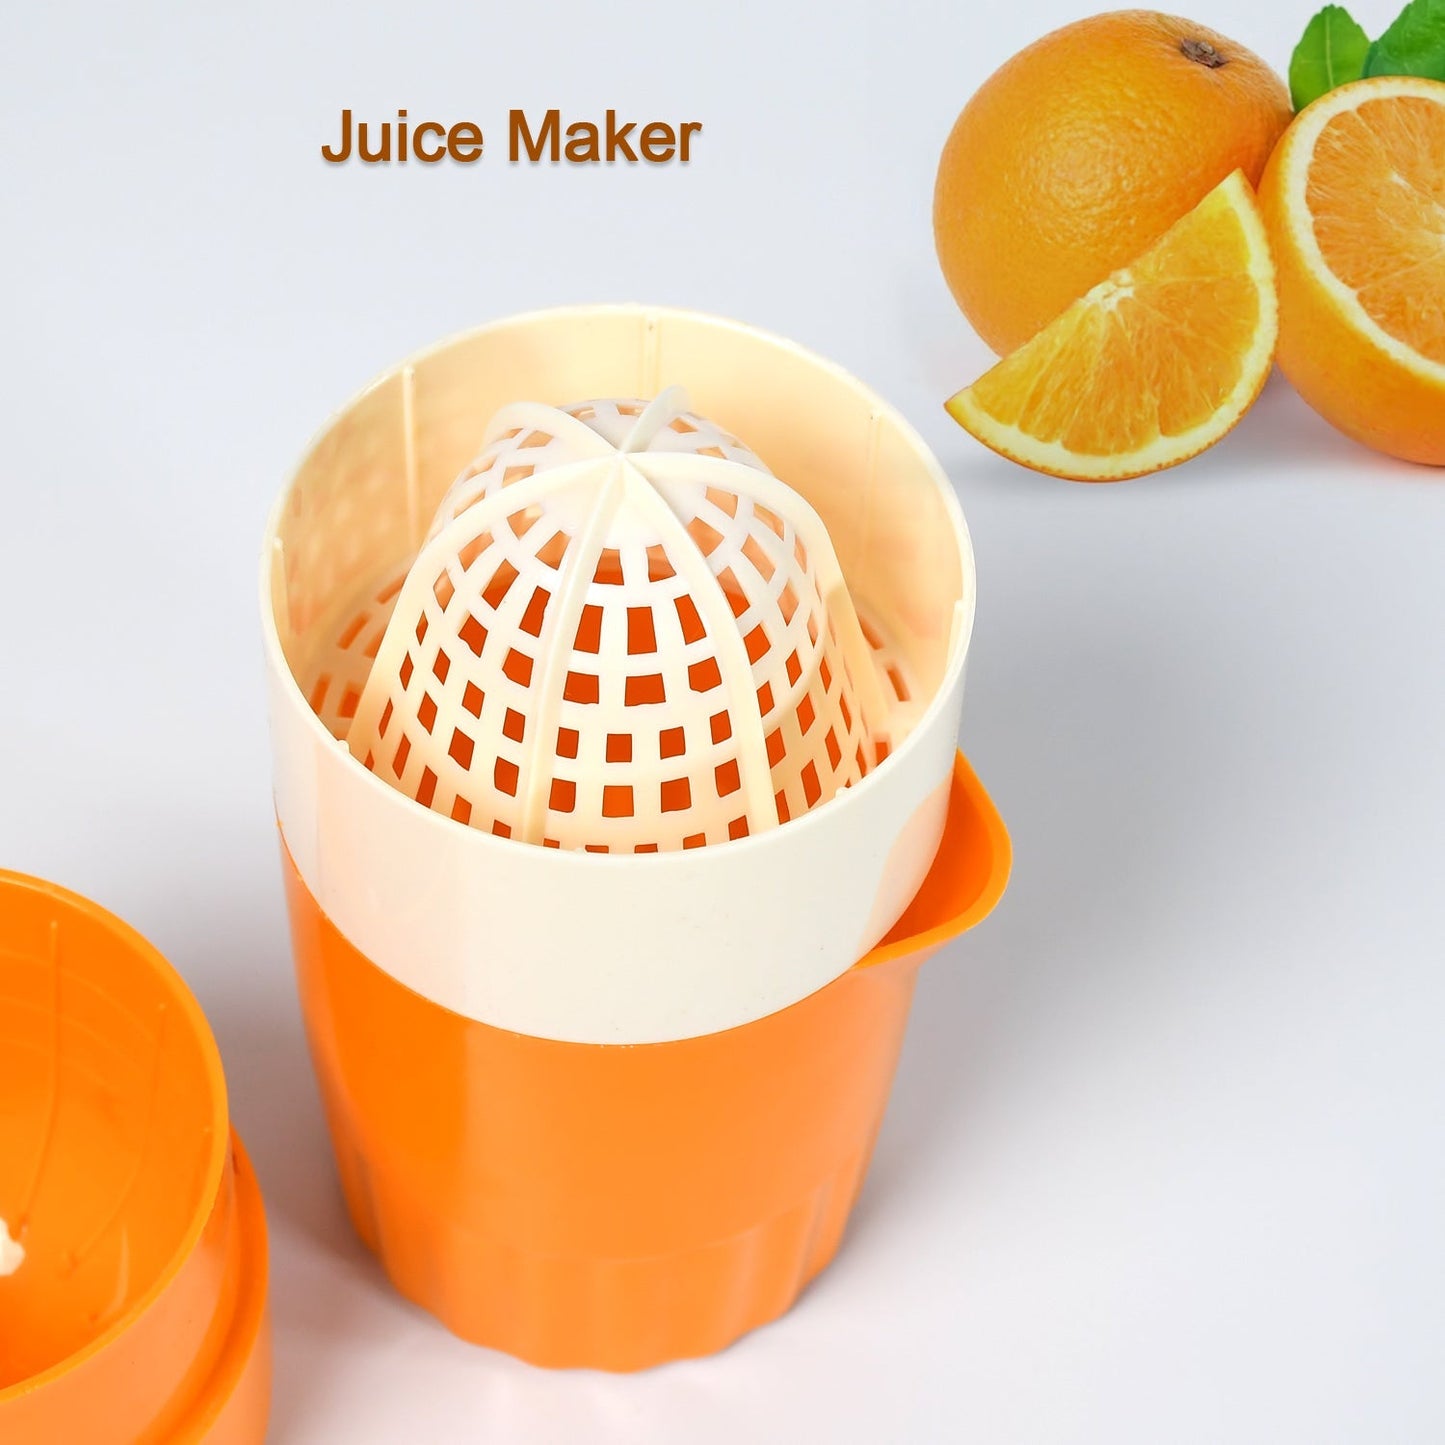 2815 Manual Handheld Citrus Orange Lemon Juicer Fruit Press Squeeze Extractor New DeoDap